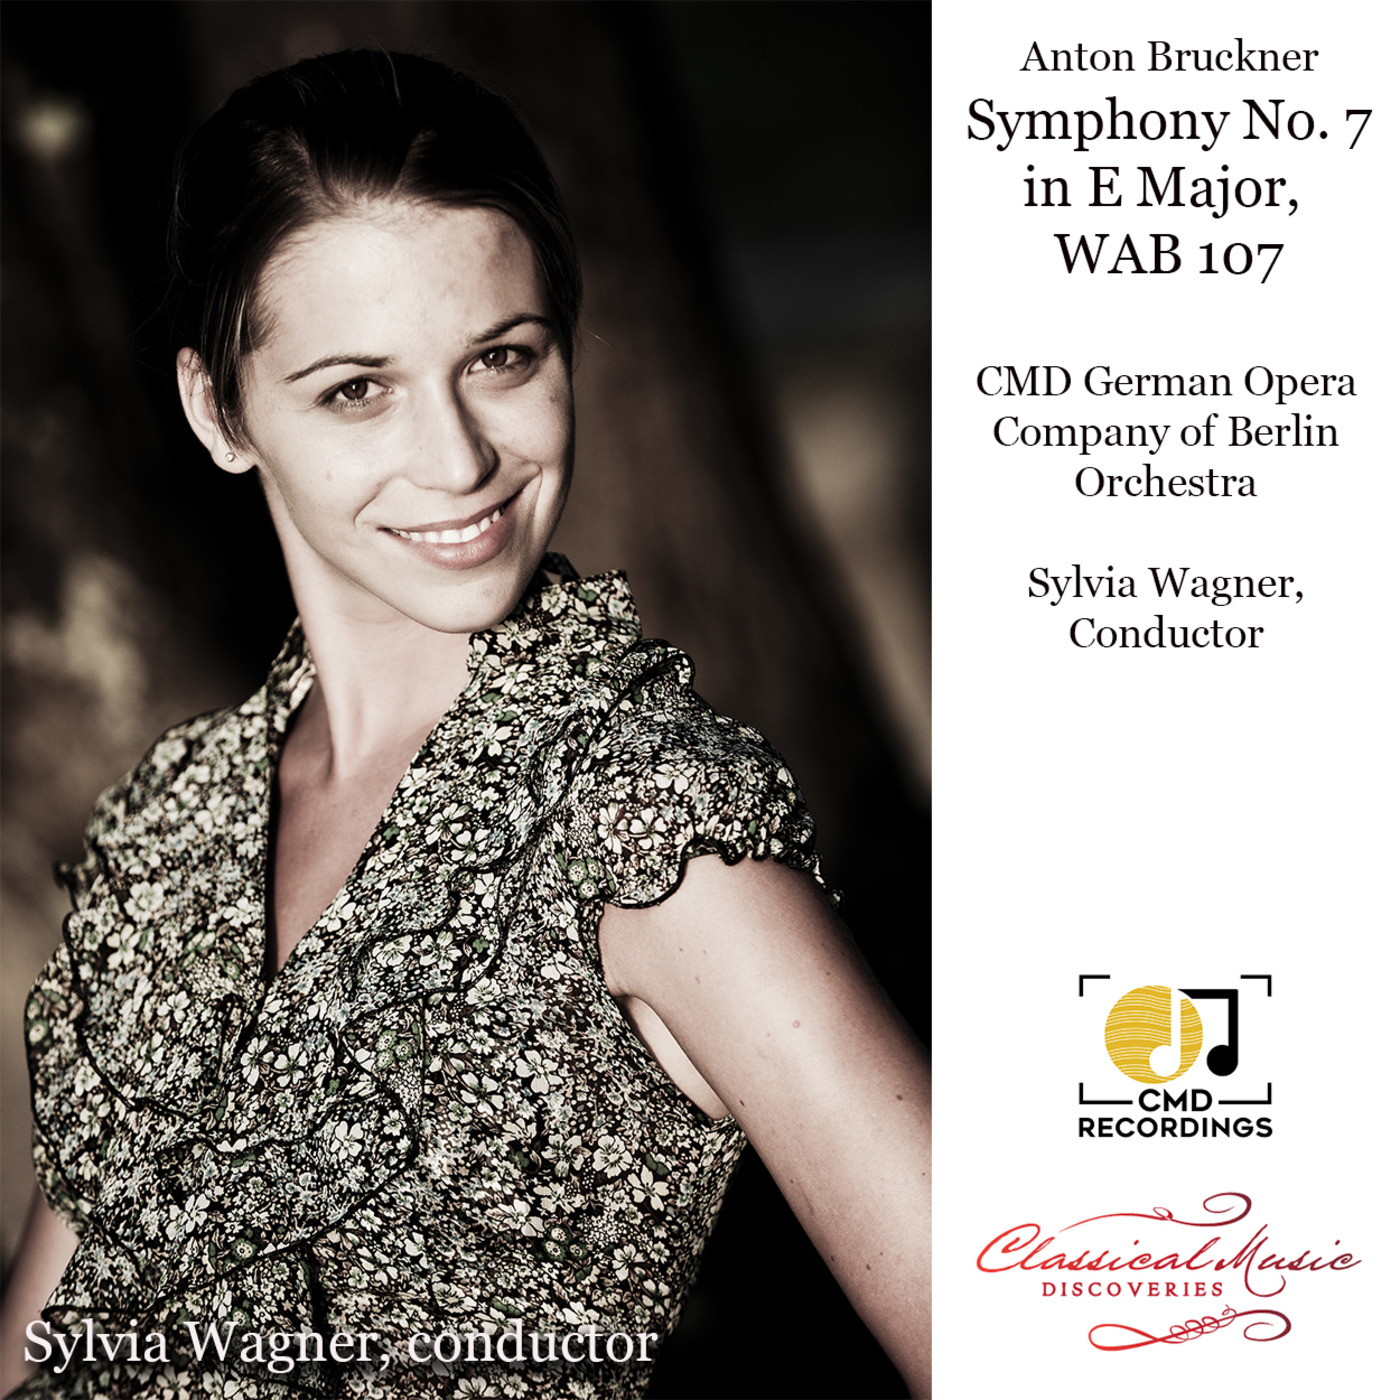 Episode 188: 14188 Bruckner: Symphony No. 7 in E Major, WAB107